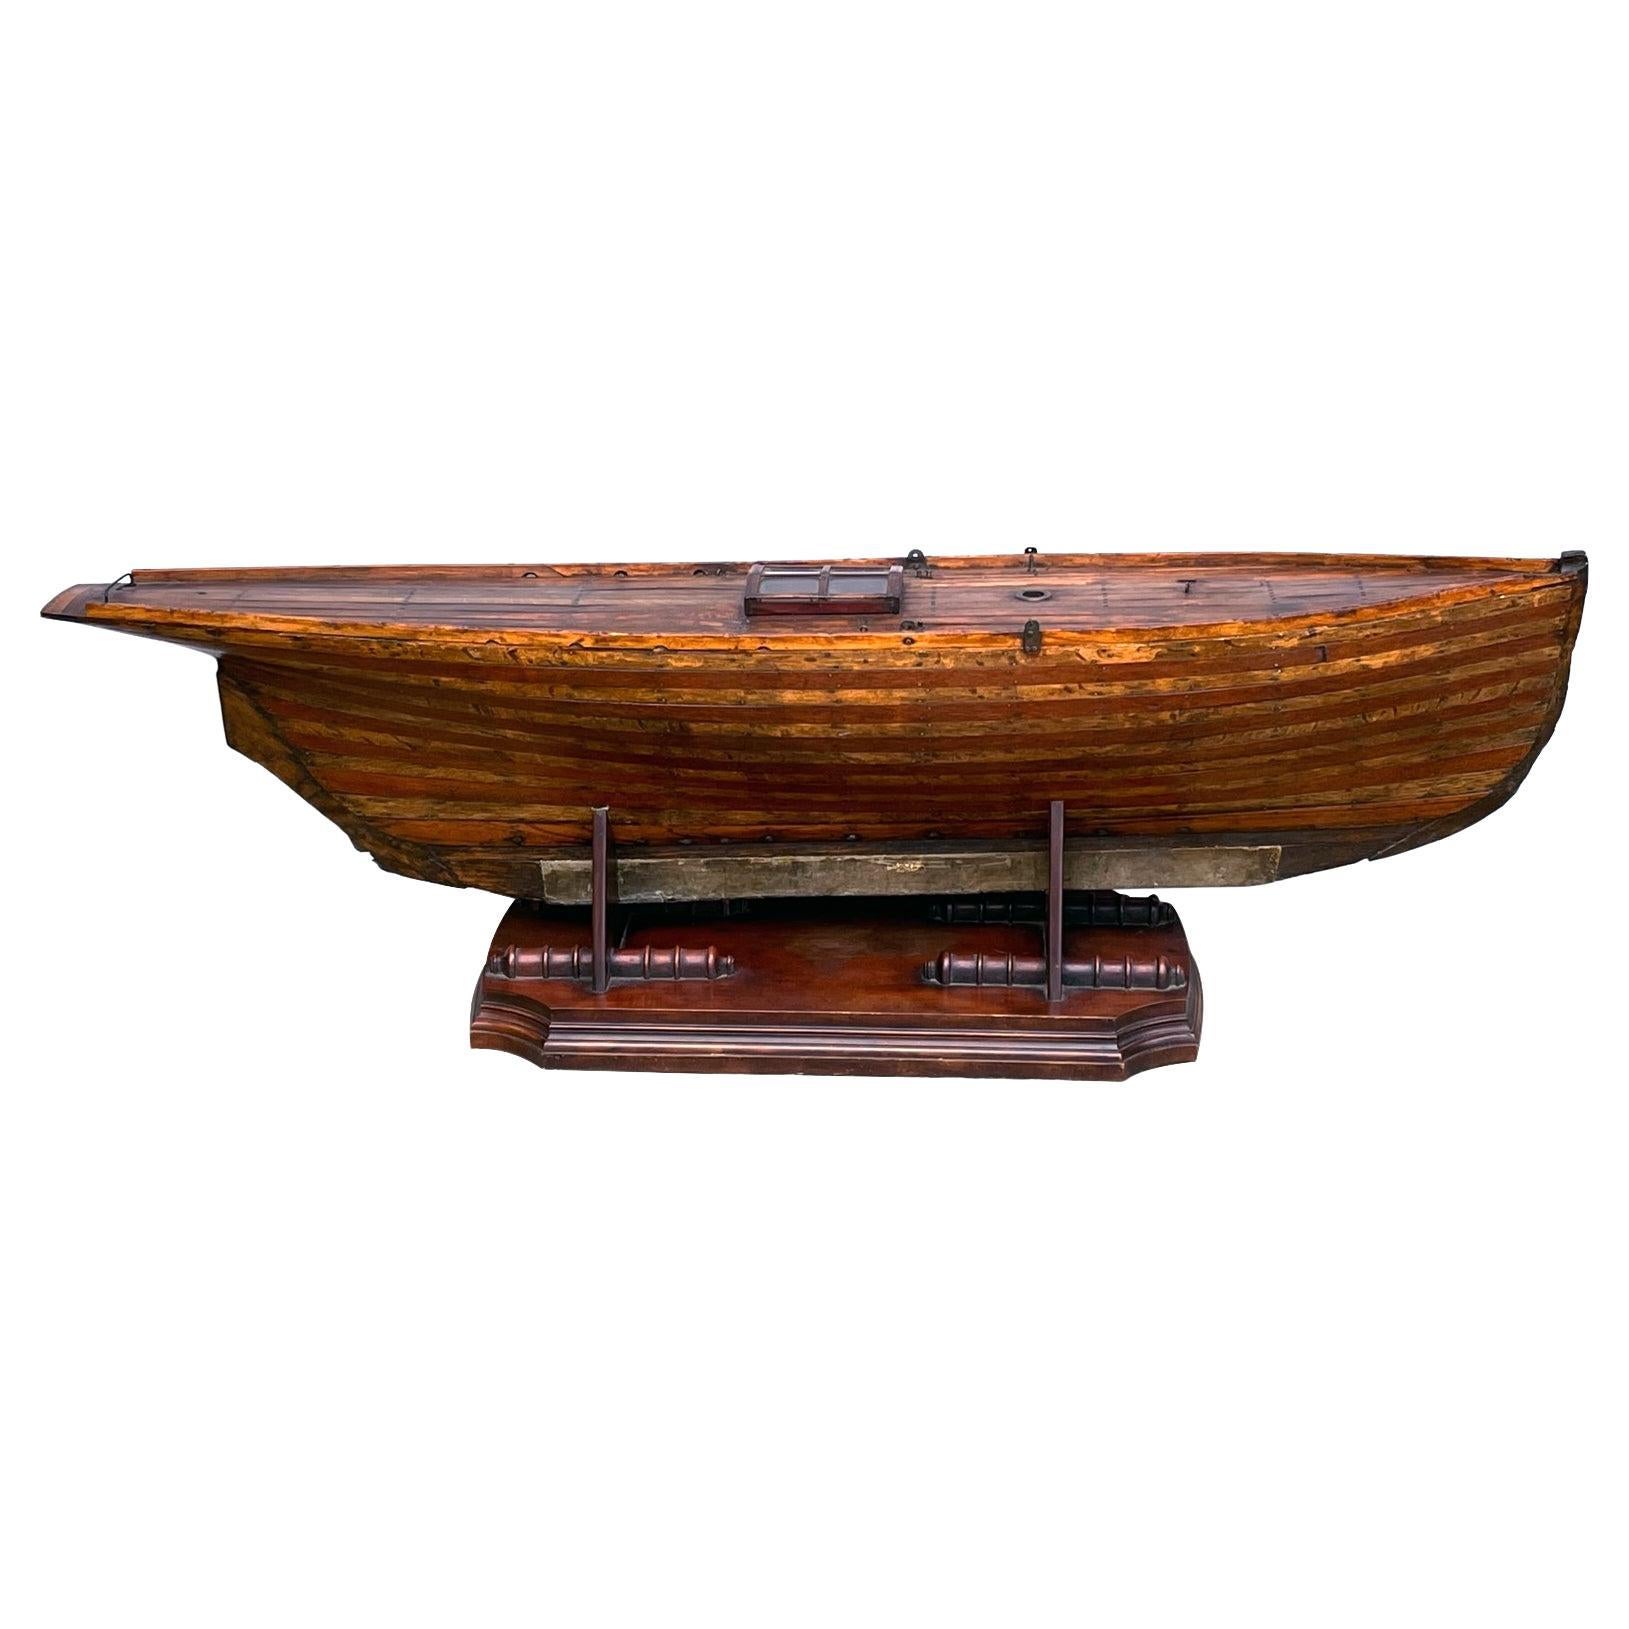 Grande charrette de bateau ou de yacht de bassin de la fin du XIXe siècle